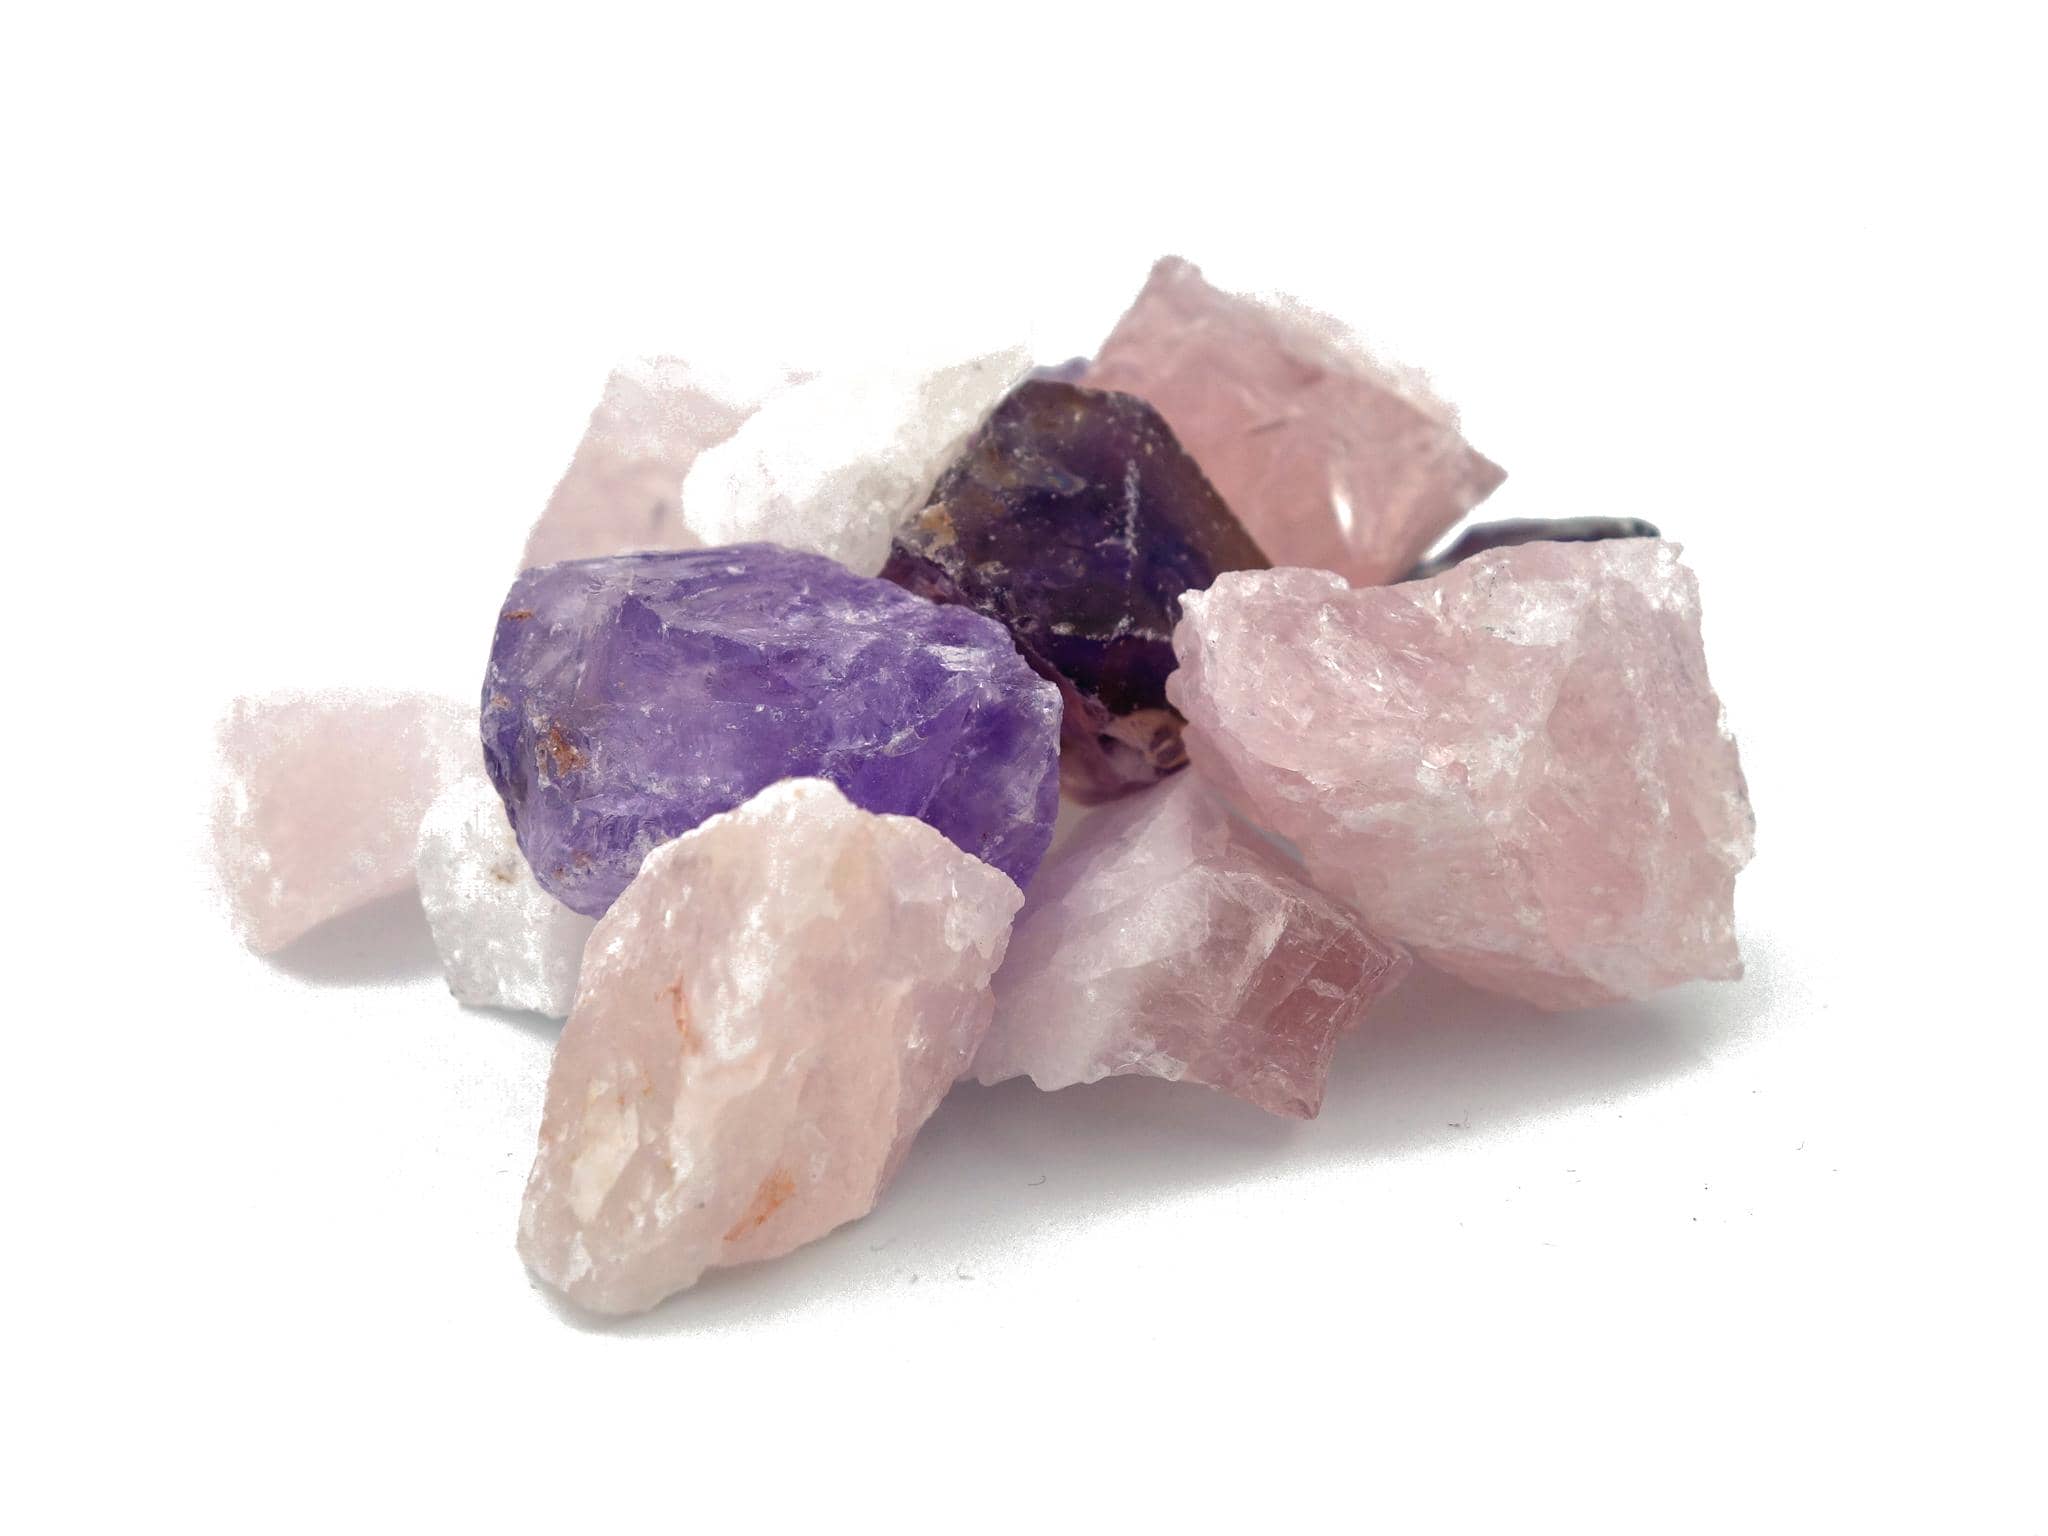 Wassersteine / Dekosteine Grundmischung mit Amethyst + Bergkristall + Rosenquarz (ca. 0,5 kg)  100% Natursteine